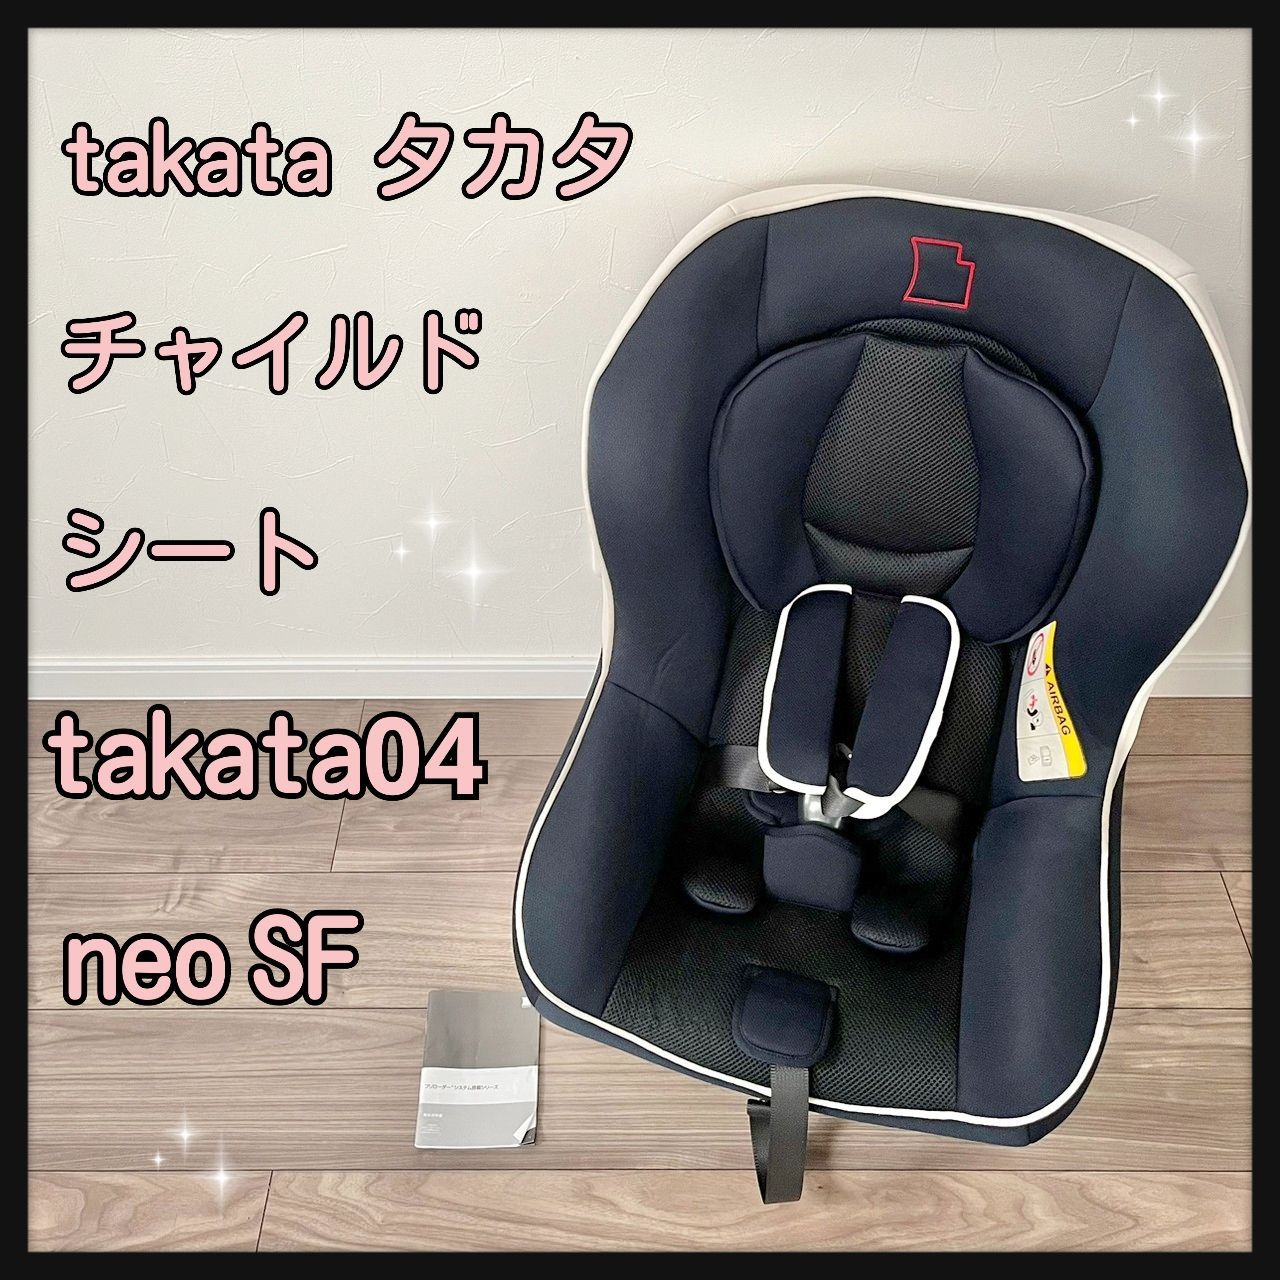 美品 安全性最高評価 タカタ チャイルドシート takata04-neo - 車のパーツ